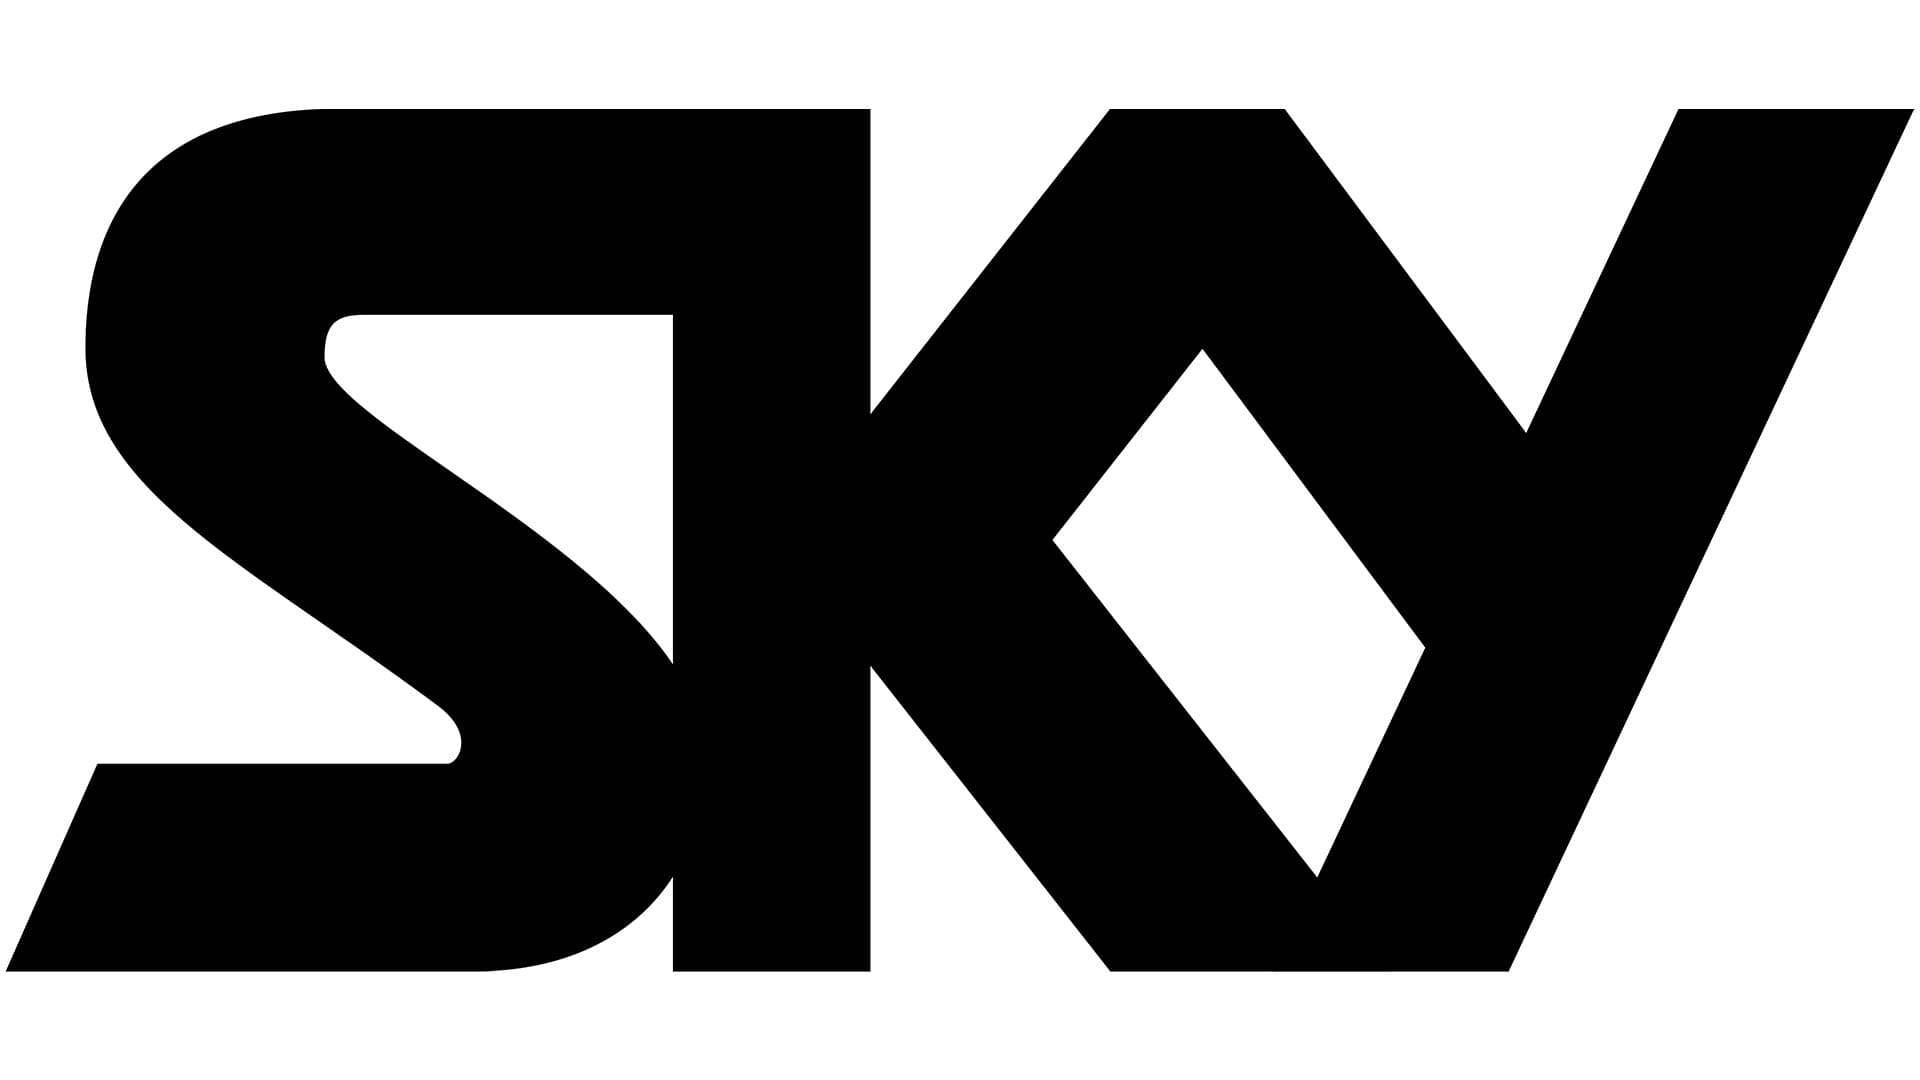 Sky Logo valor história PNG